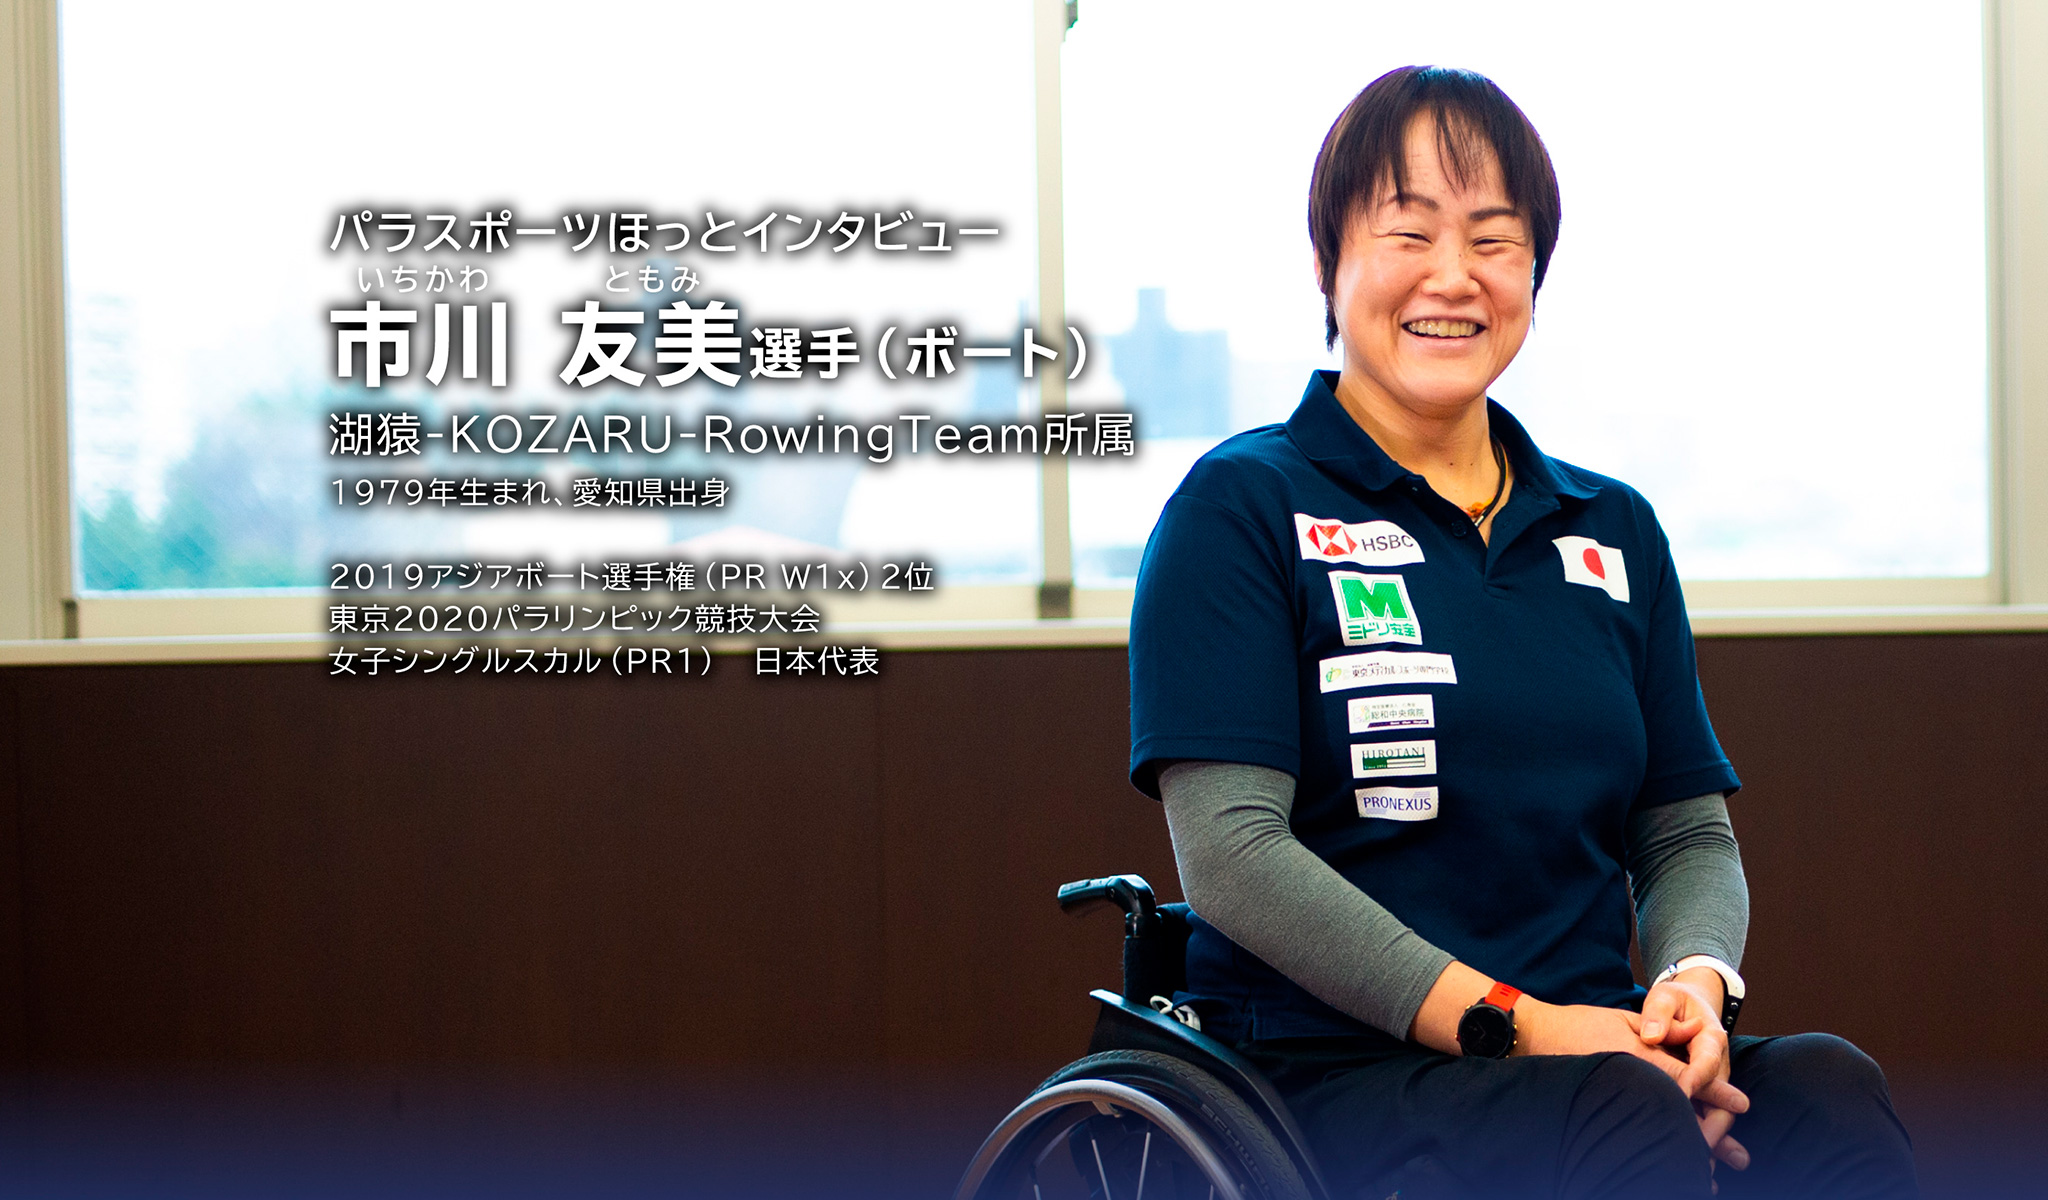 パラスポーツほっとインタビュー いちかわ ともみ選手（ボート）湖猿-KOZARU-RowingTeam所属 1979年生まれ、愛知県出身 2019アジアボート選手権
（PR W1x）2位 東京2020パラリンピック競技大会 女子シングルスカル（PR1）日本代表